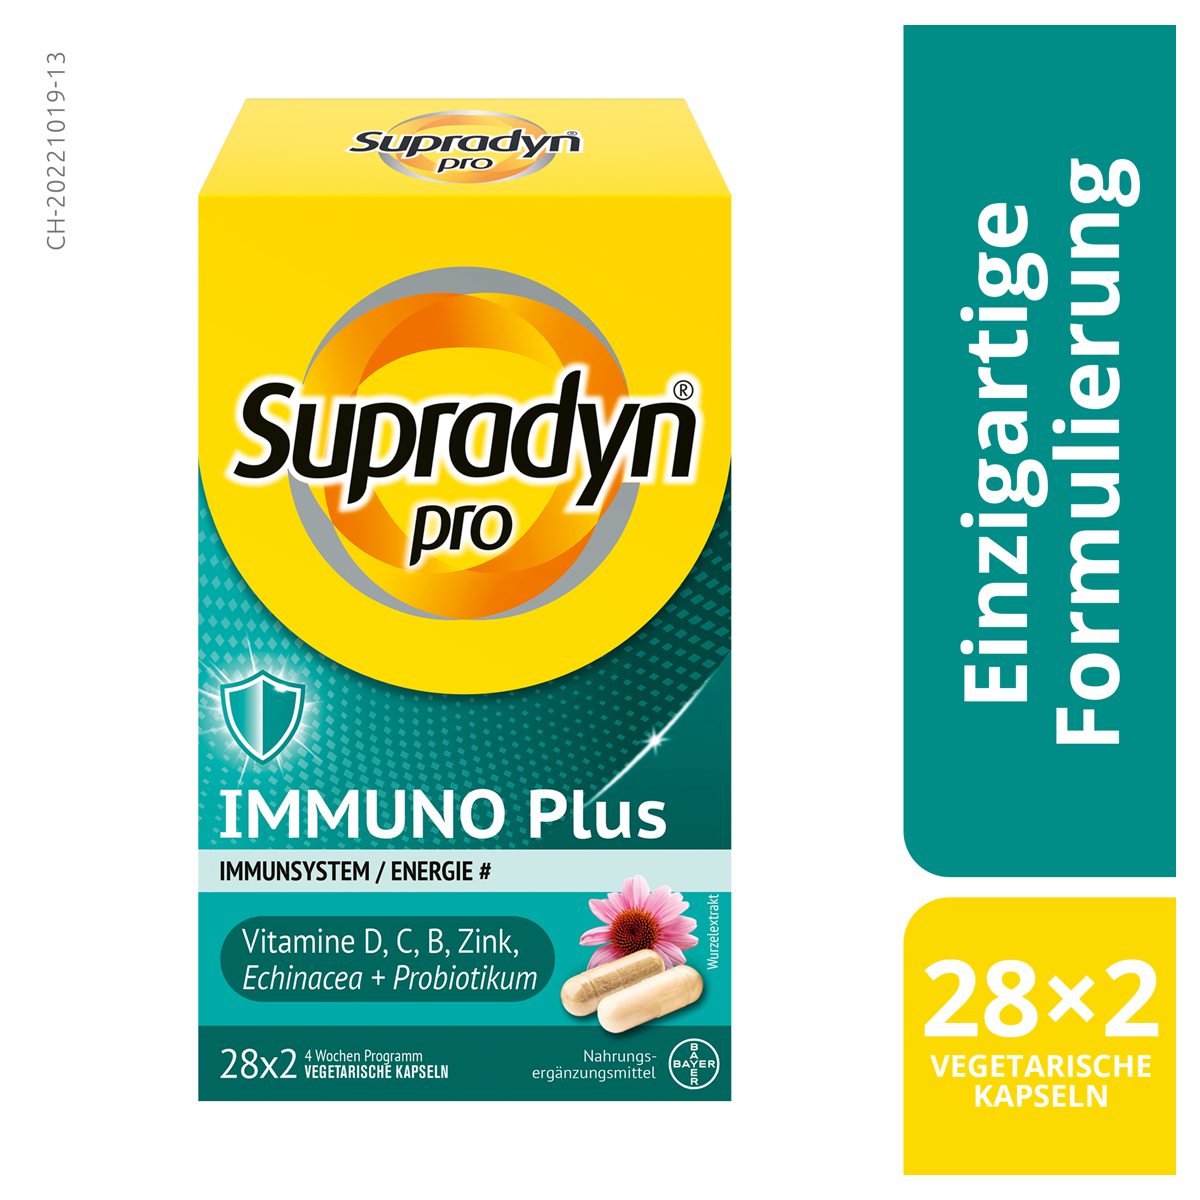 Supradyn Pro Immuno Plus Kapseln einzigartige Formulierung